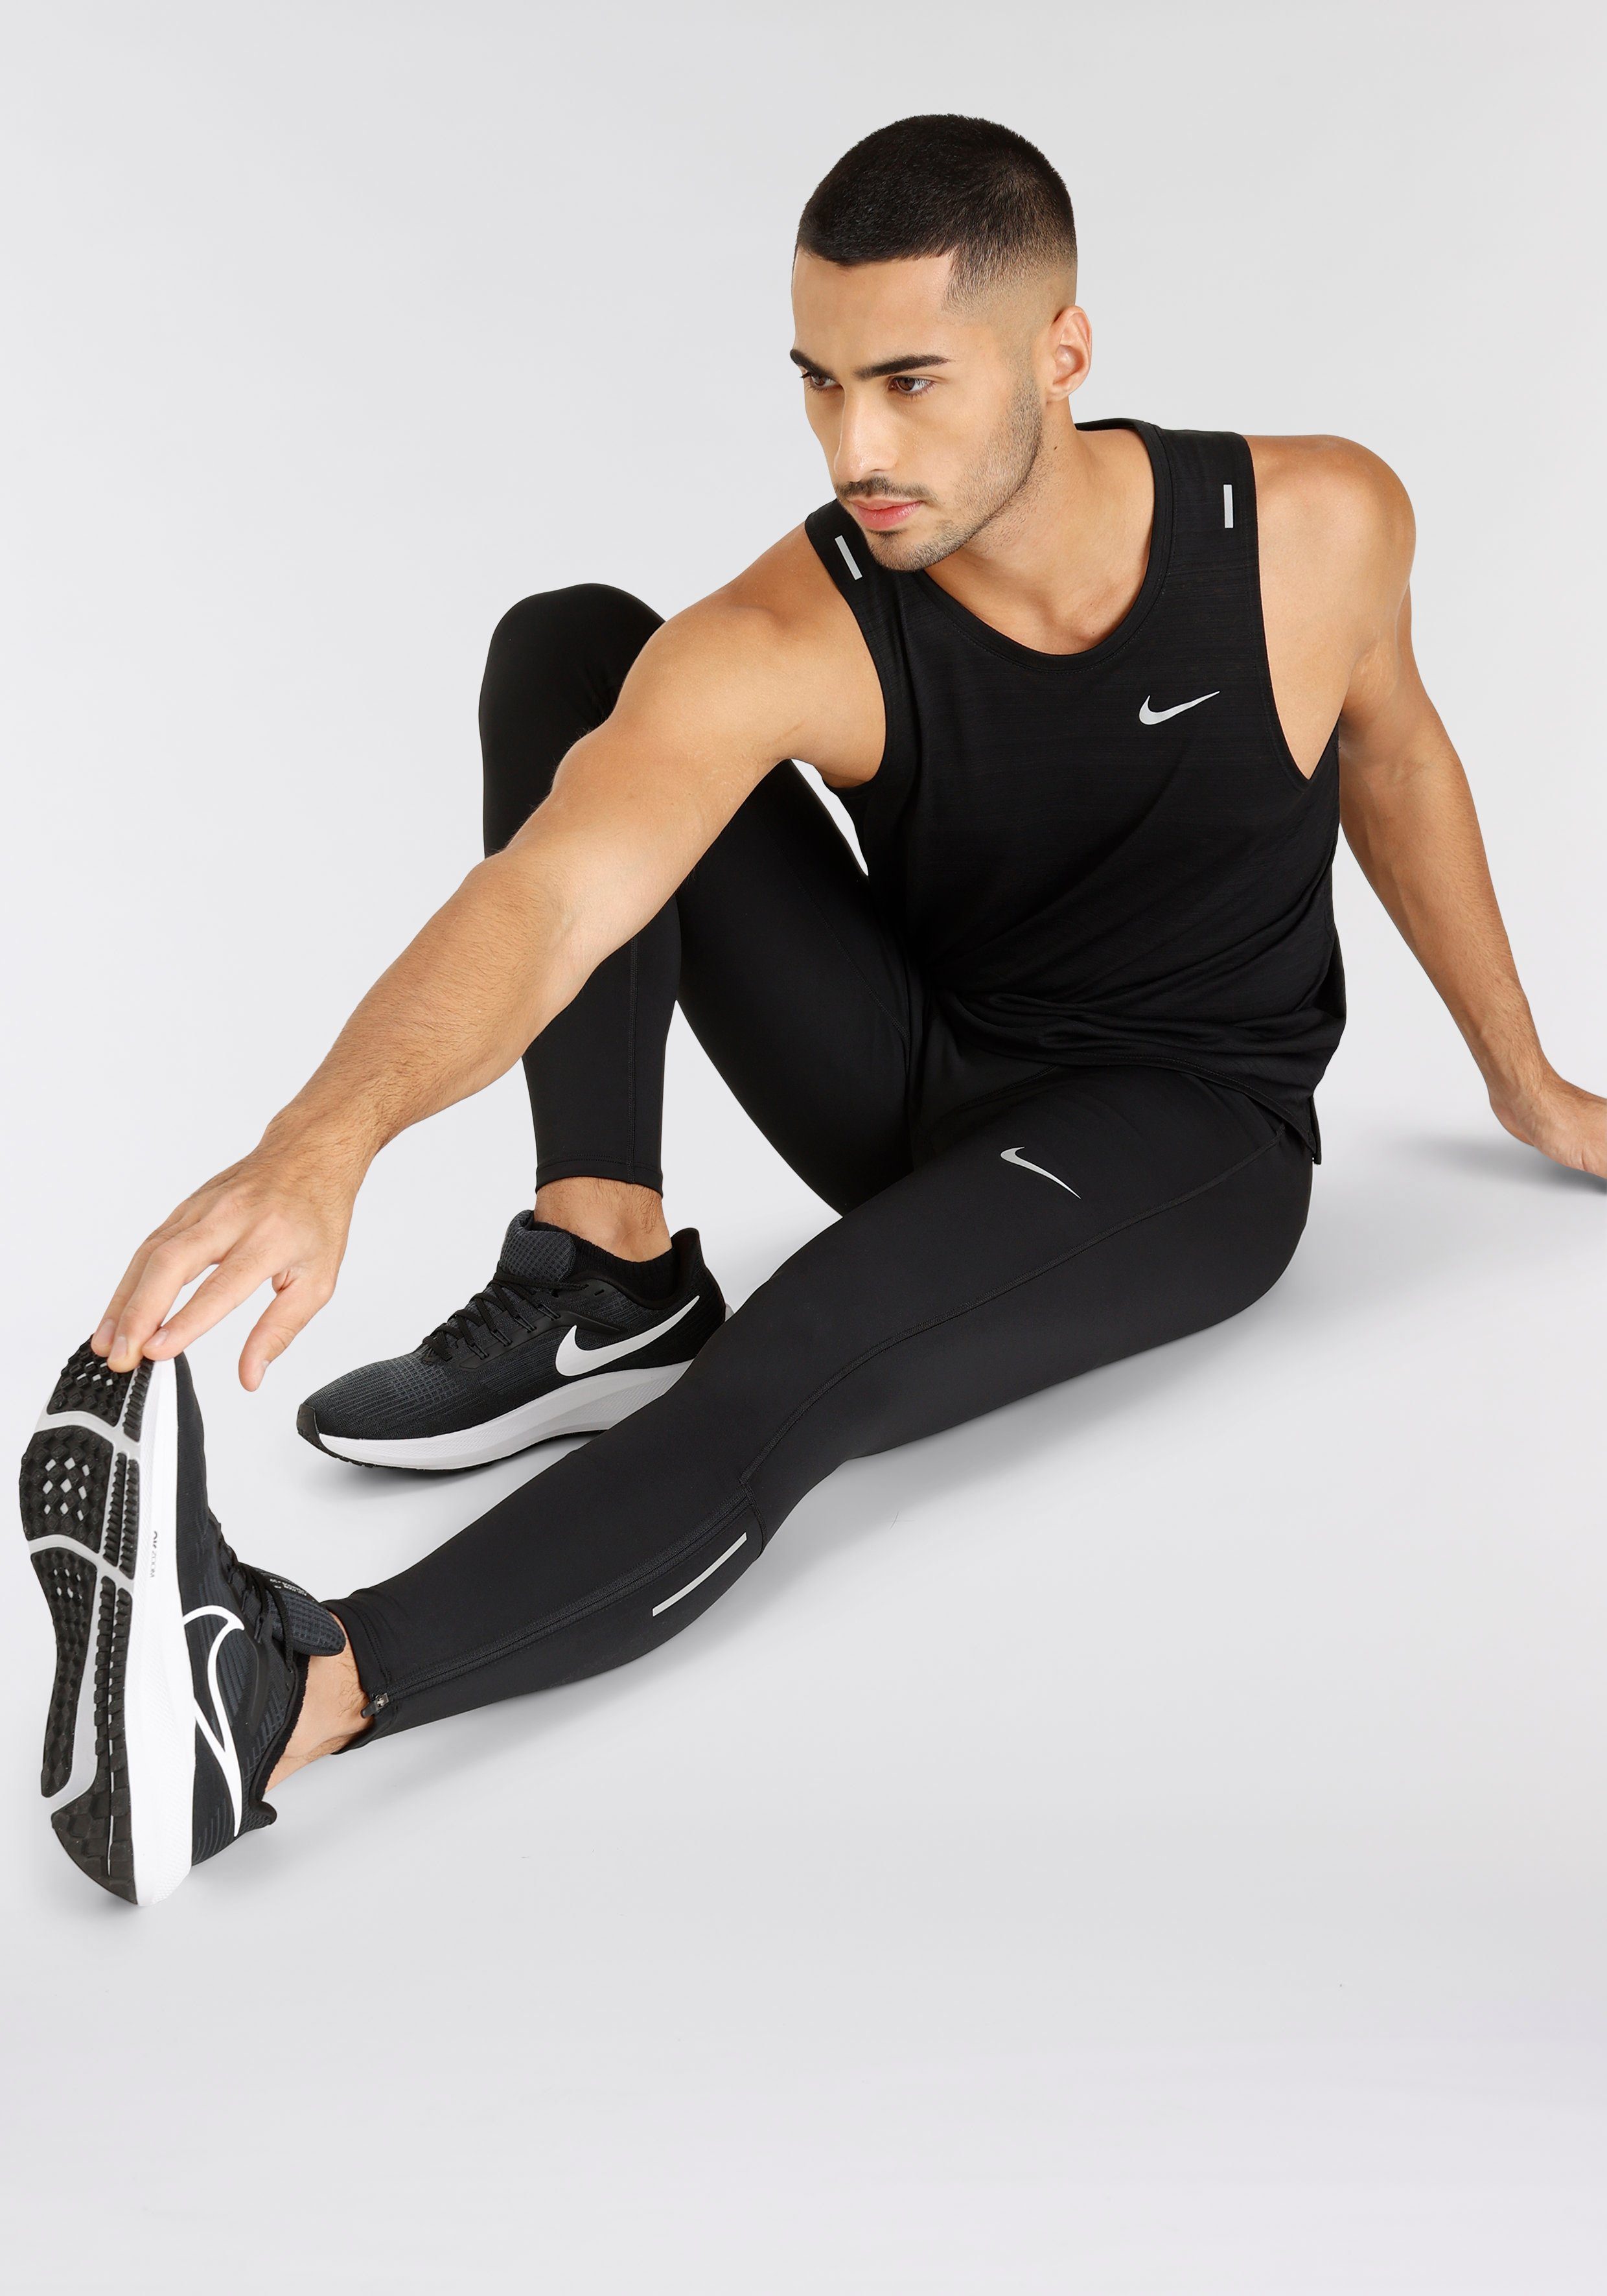 Challenger Nike Lauftights Men's Tights Running schwarz Dri-FIT